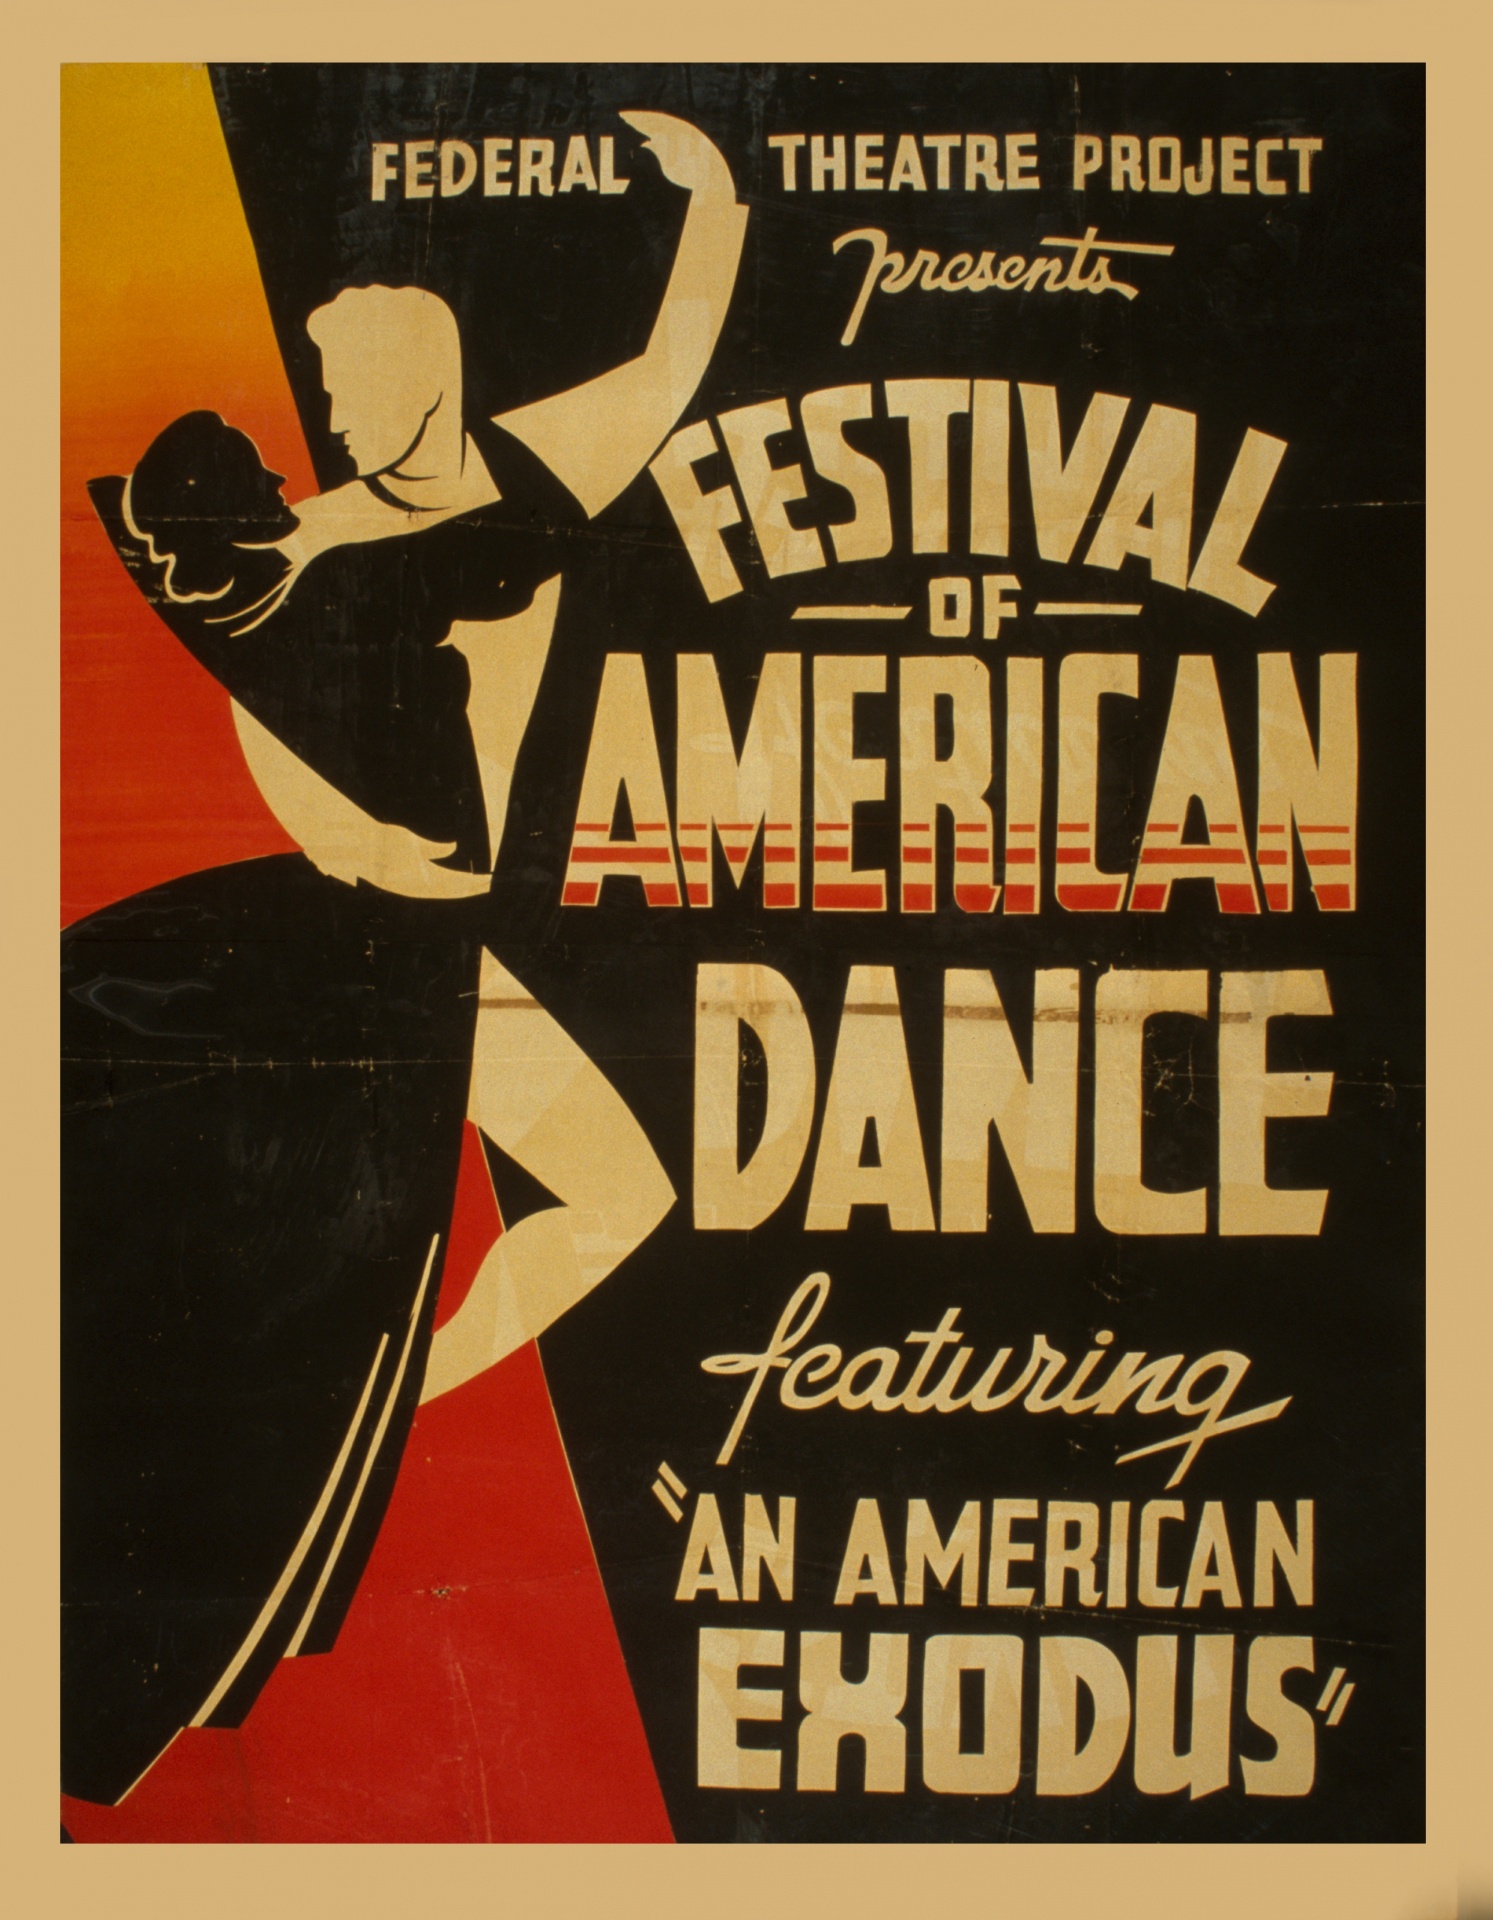 Vintage Dance Festival Poster